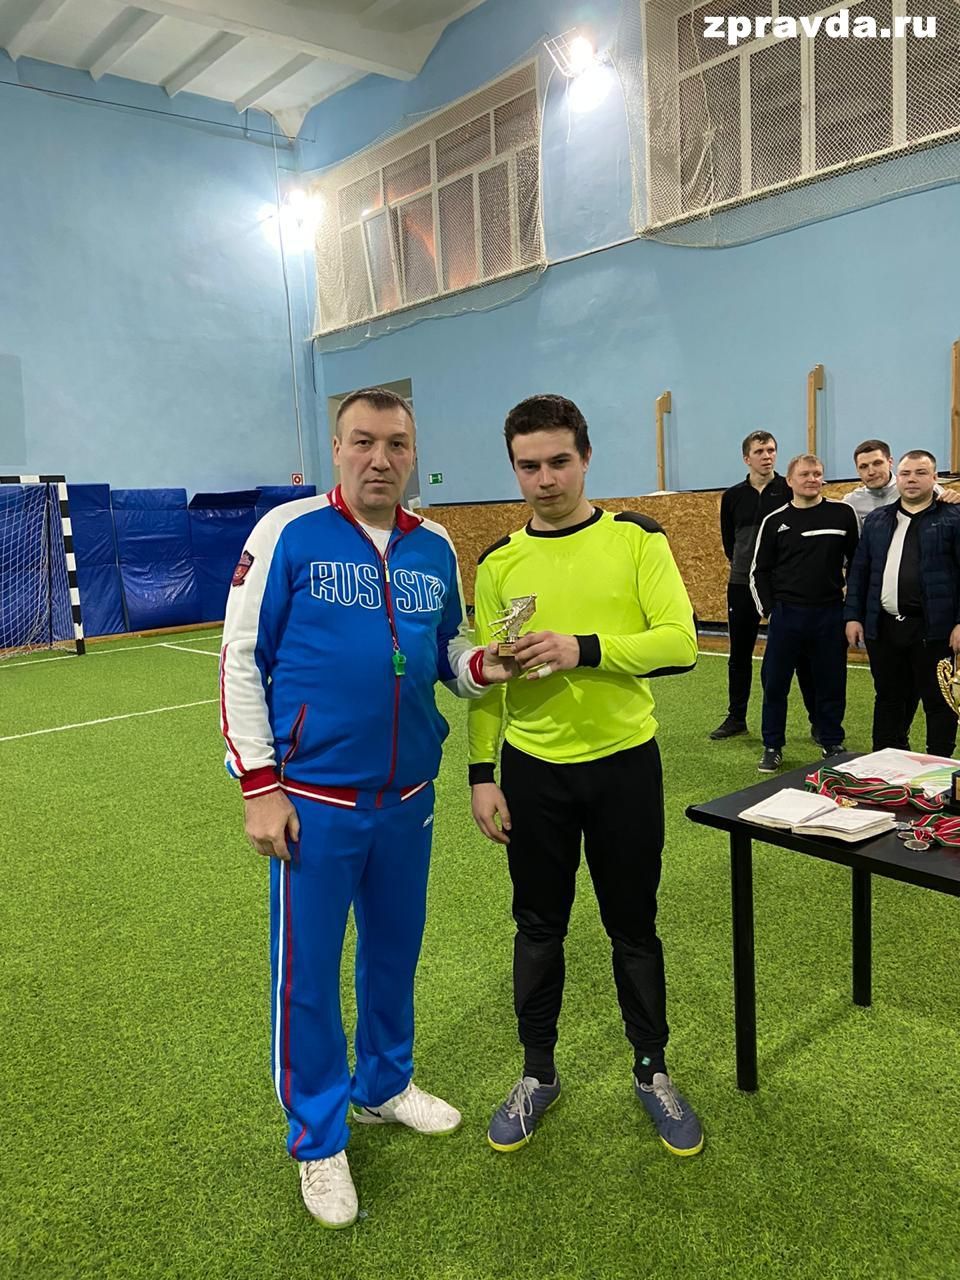 Турнир по мини-футболу прошёл в Васильево